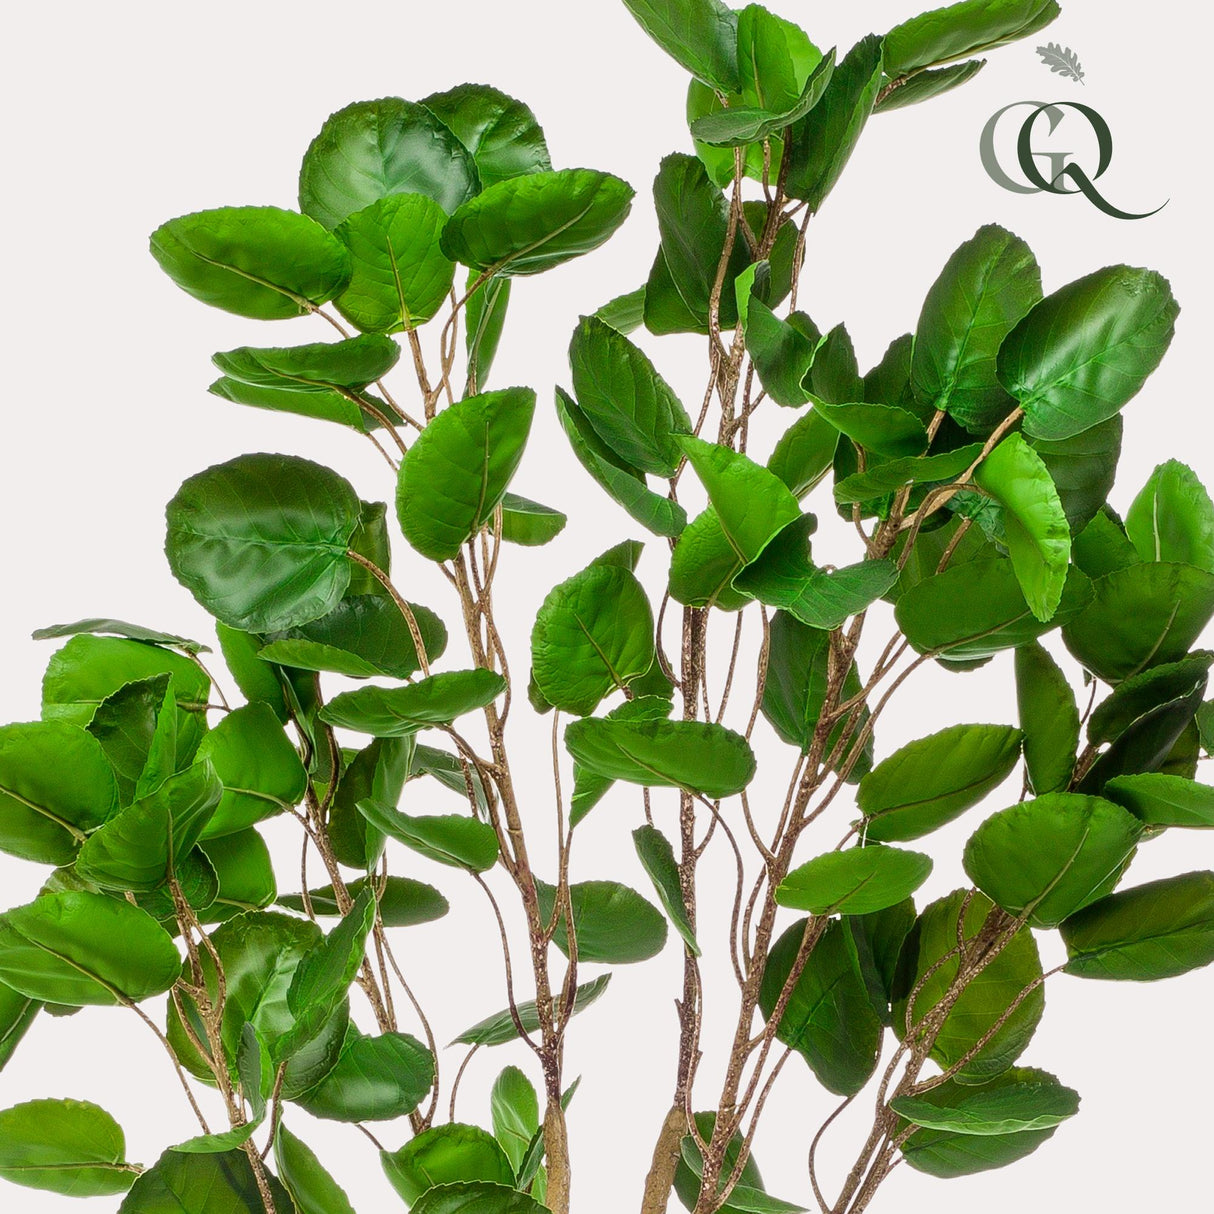 Livraison plante Polyscias Aralia plante artificielle - h150cm, Ø12cm